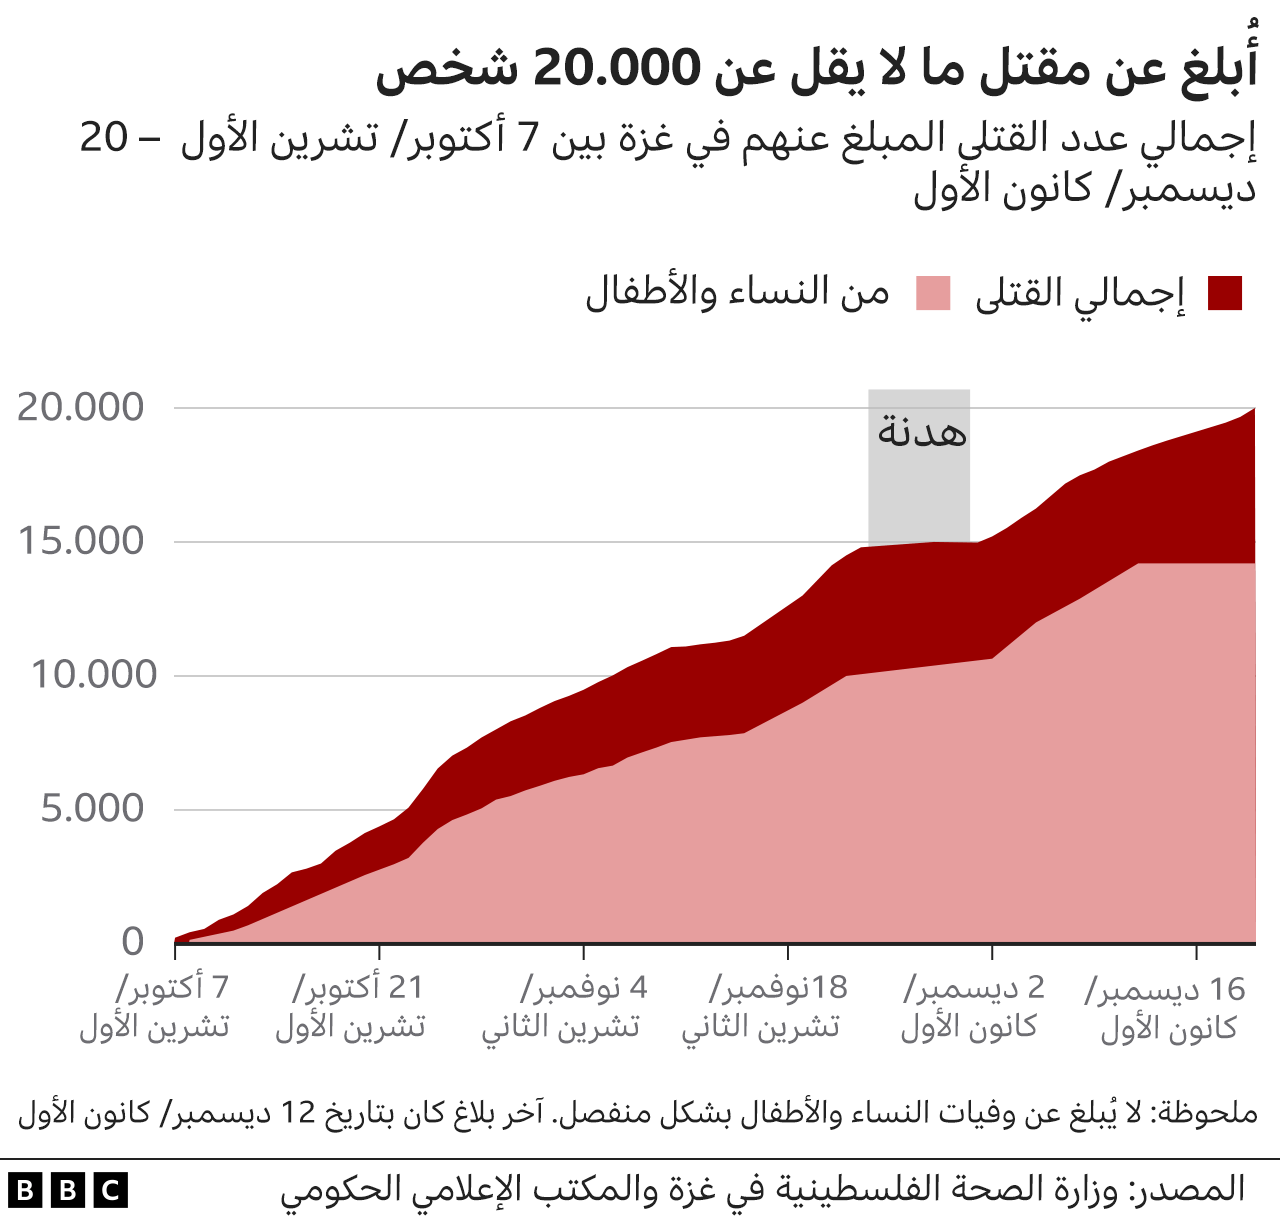 رسم بياني يوضح عدد القتلى الفلسطينيين في حرب غزة.